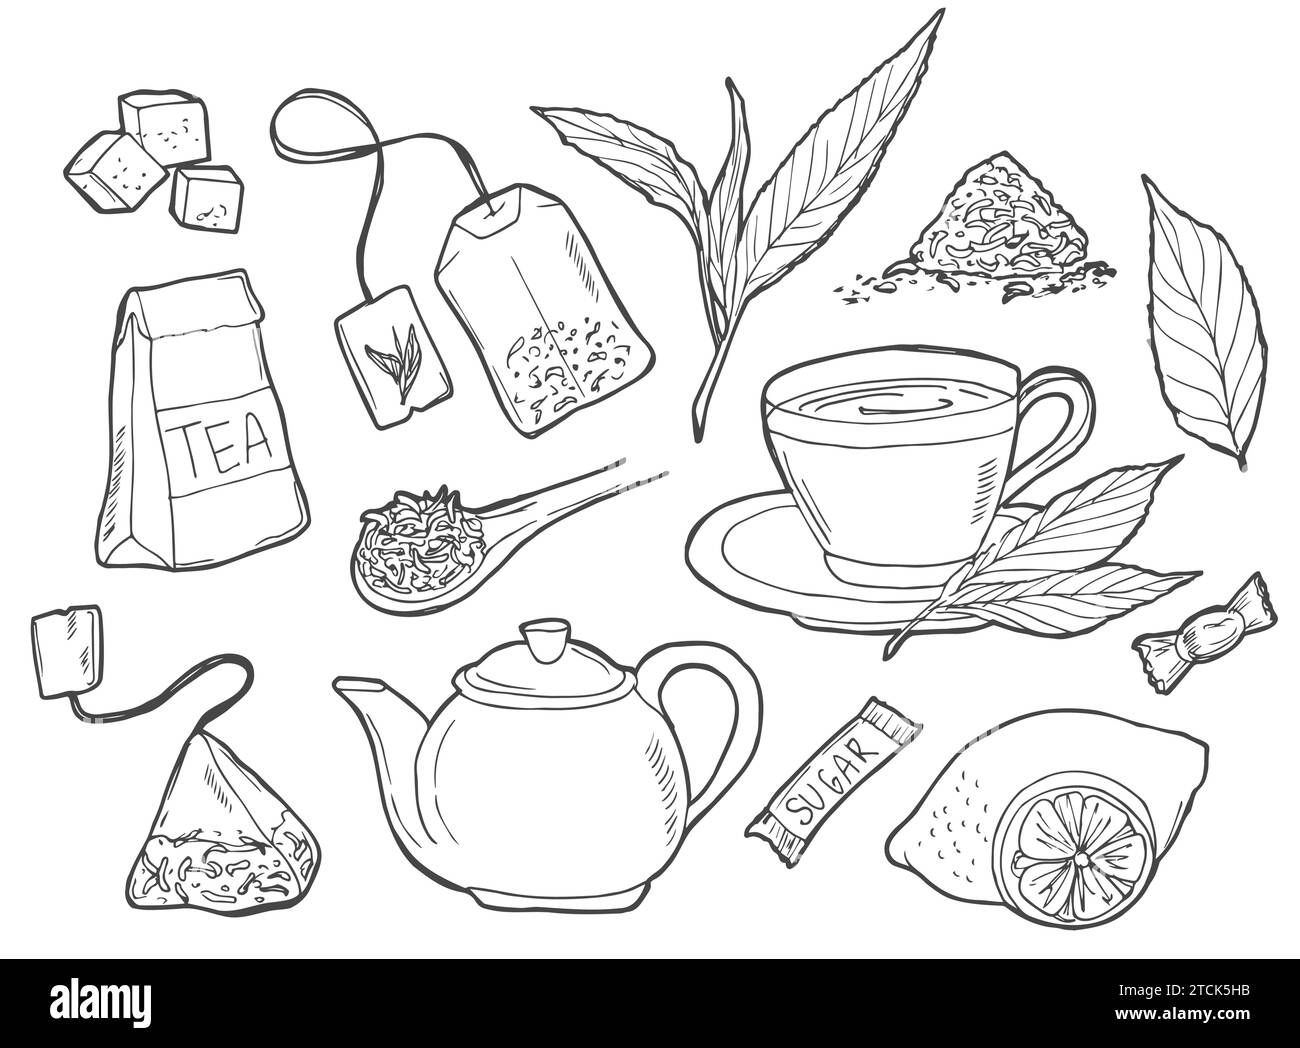 Handgezeichnetes Doodle Tea Time Symbol Set. Vektorabbildung. Sammlung von Symbolen für isolierte Getränke. Cartoon verschiedene Getränkeelemente: Becher, Tasse, Teekanne, Blatt, Stock Vektor